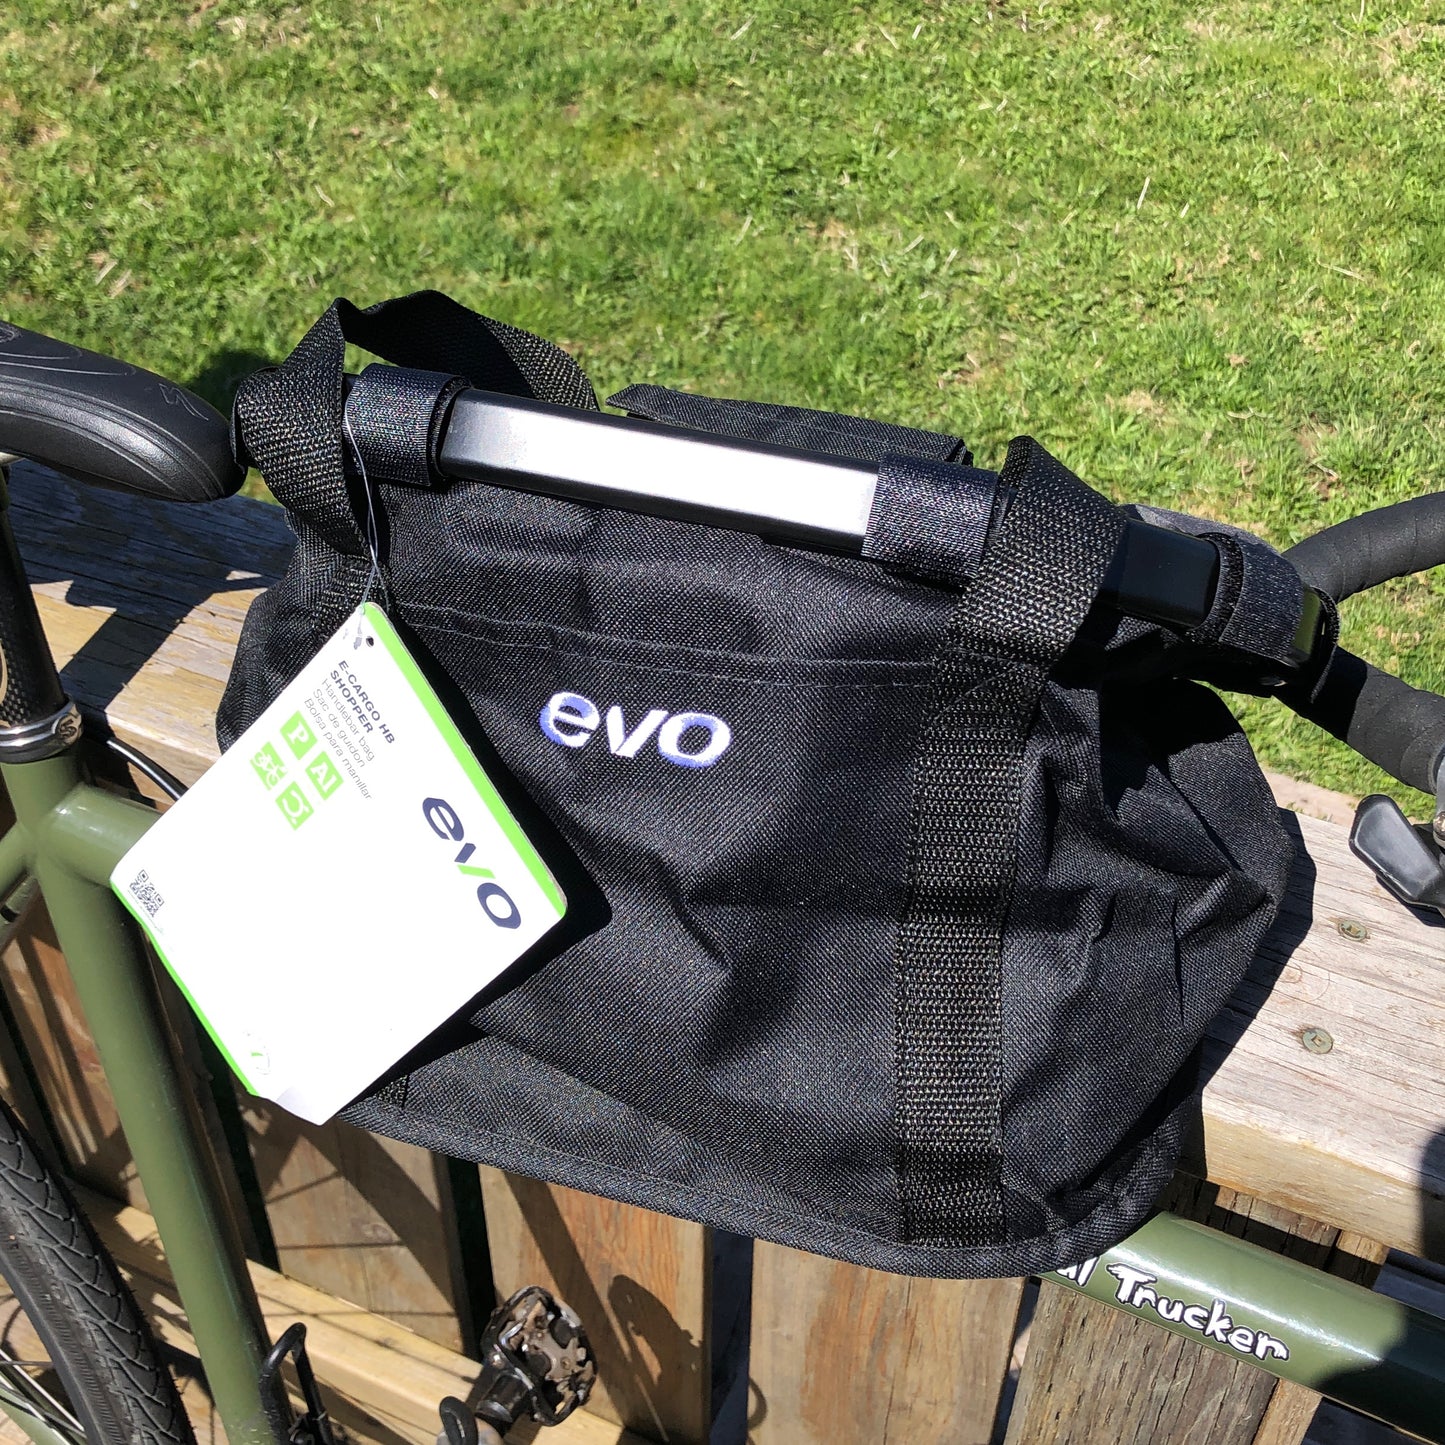 Bag - EVO E-Cargo HB Shopper Handlebar Bag